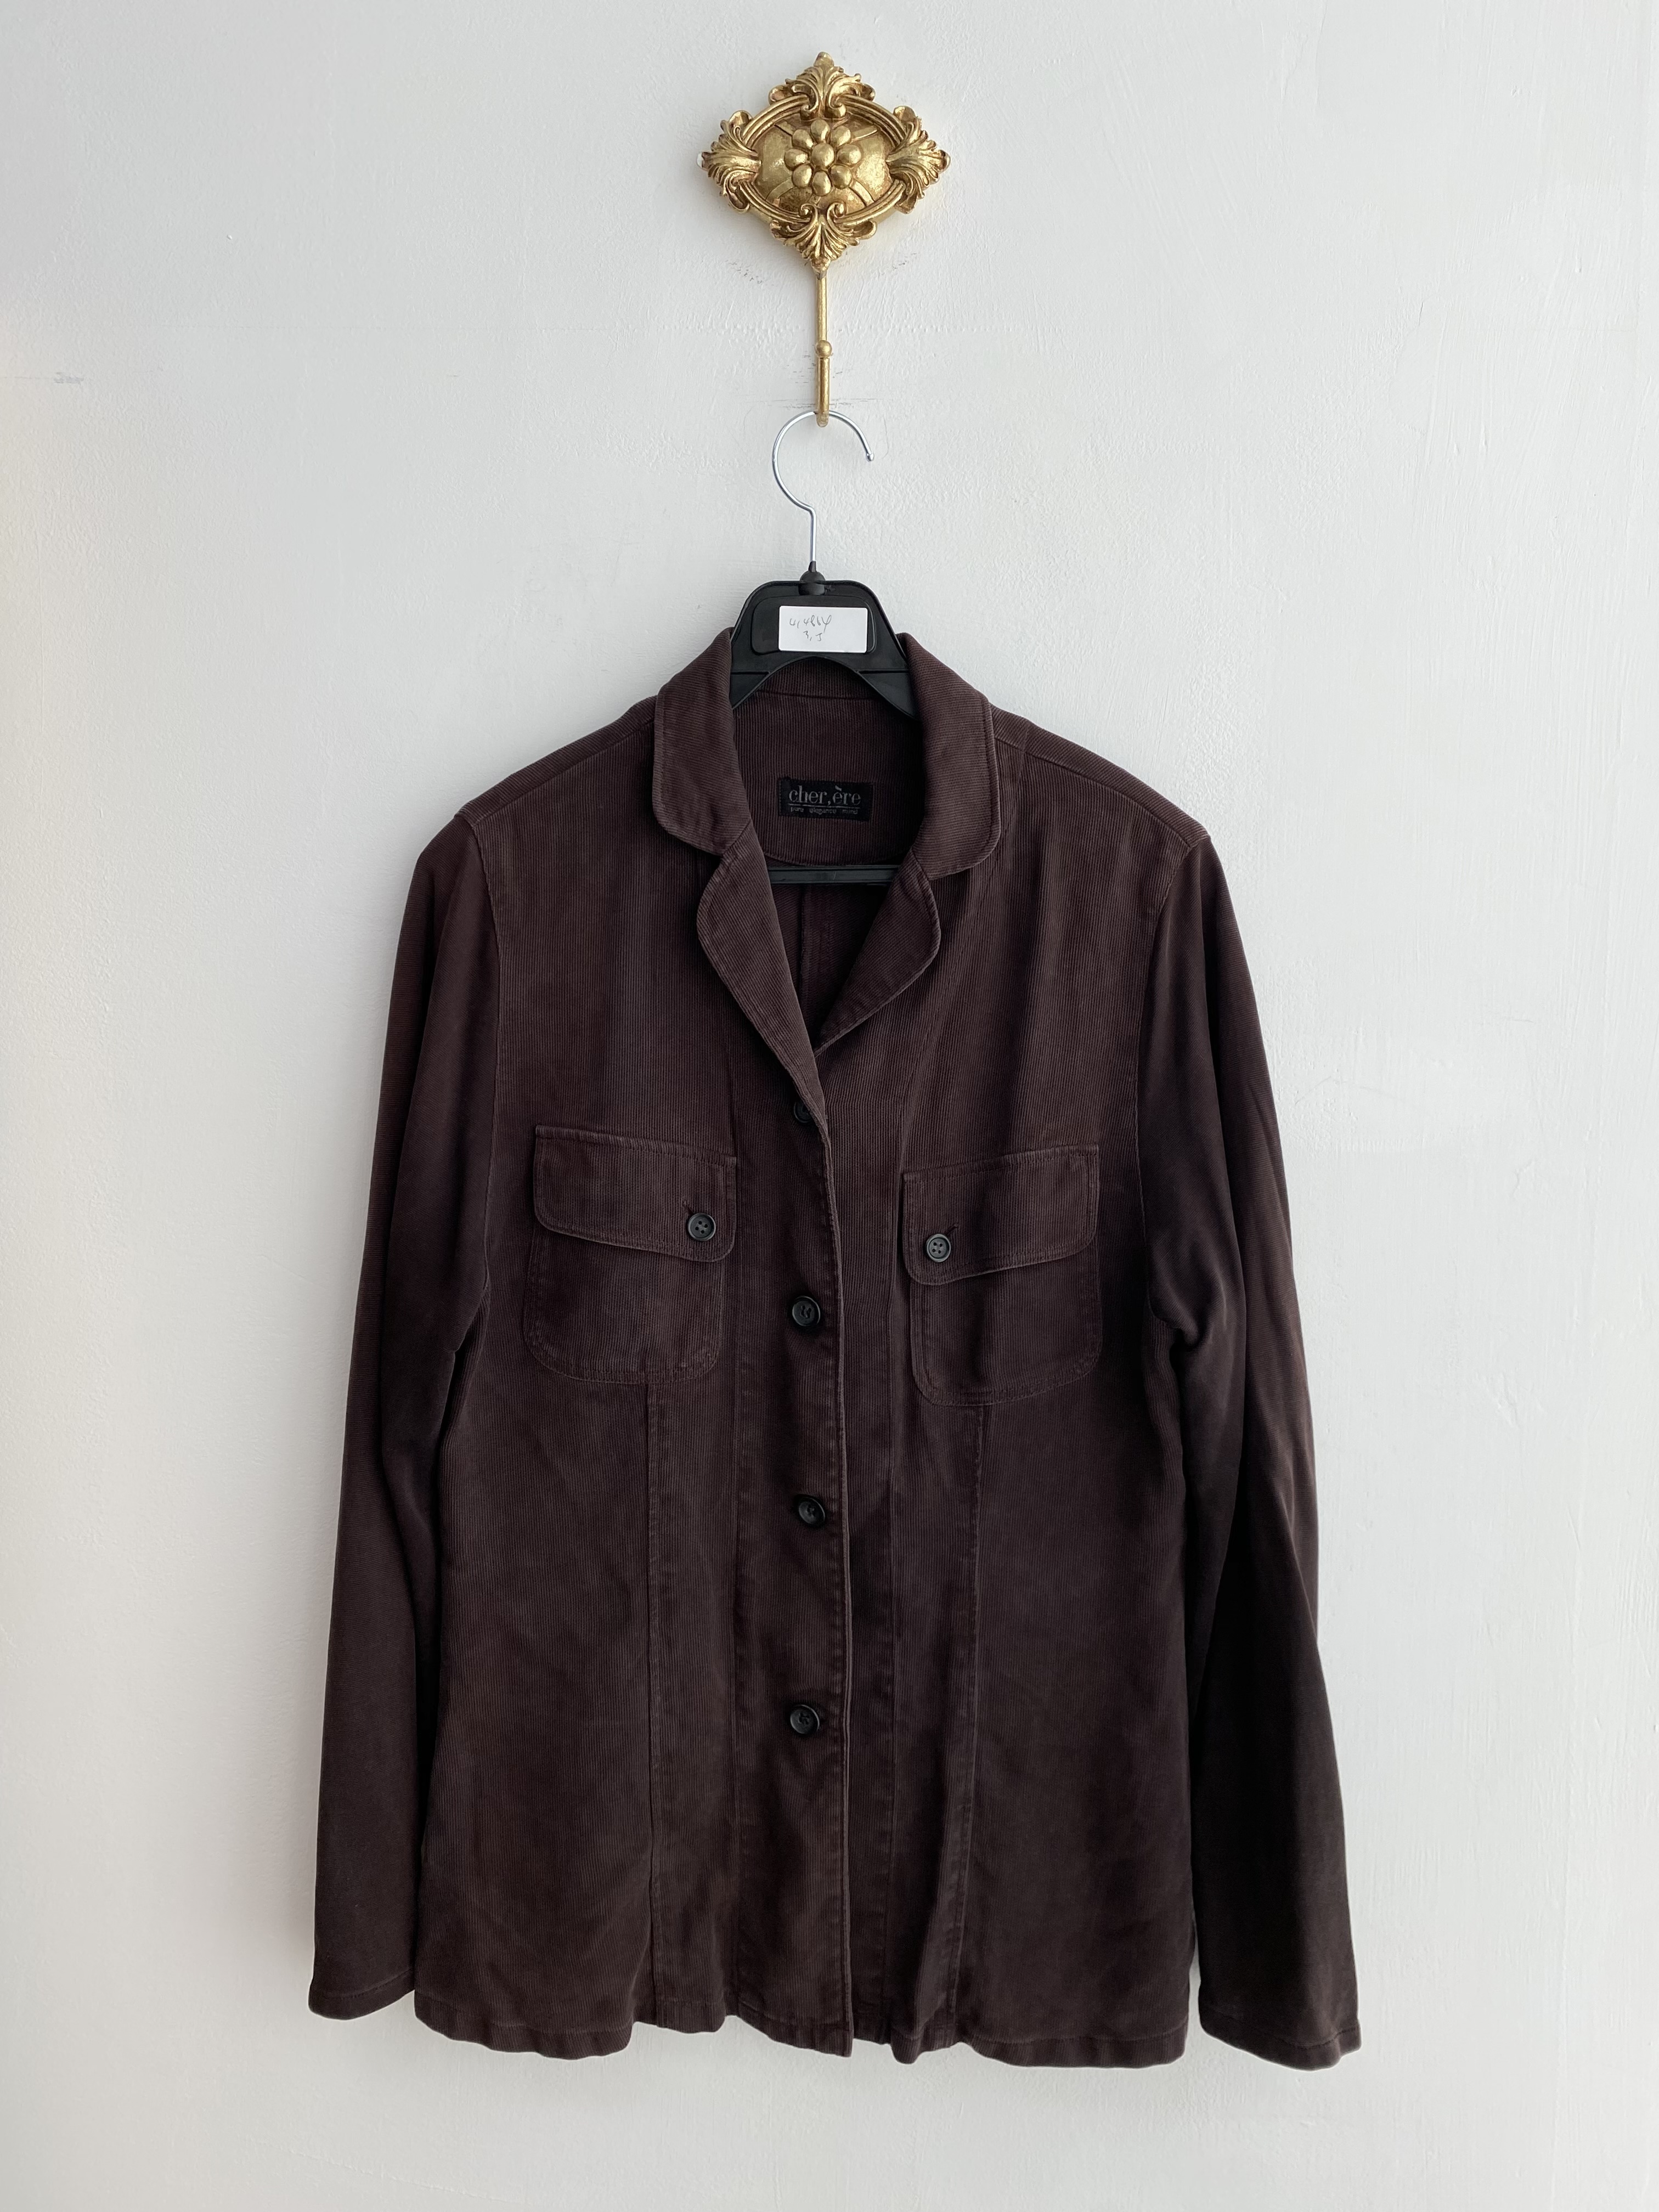 Dark brown corduroy round single jacket